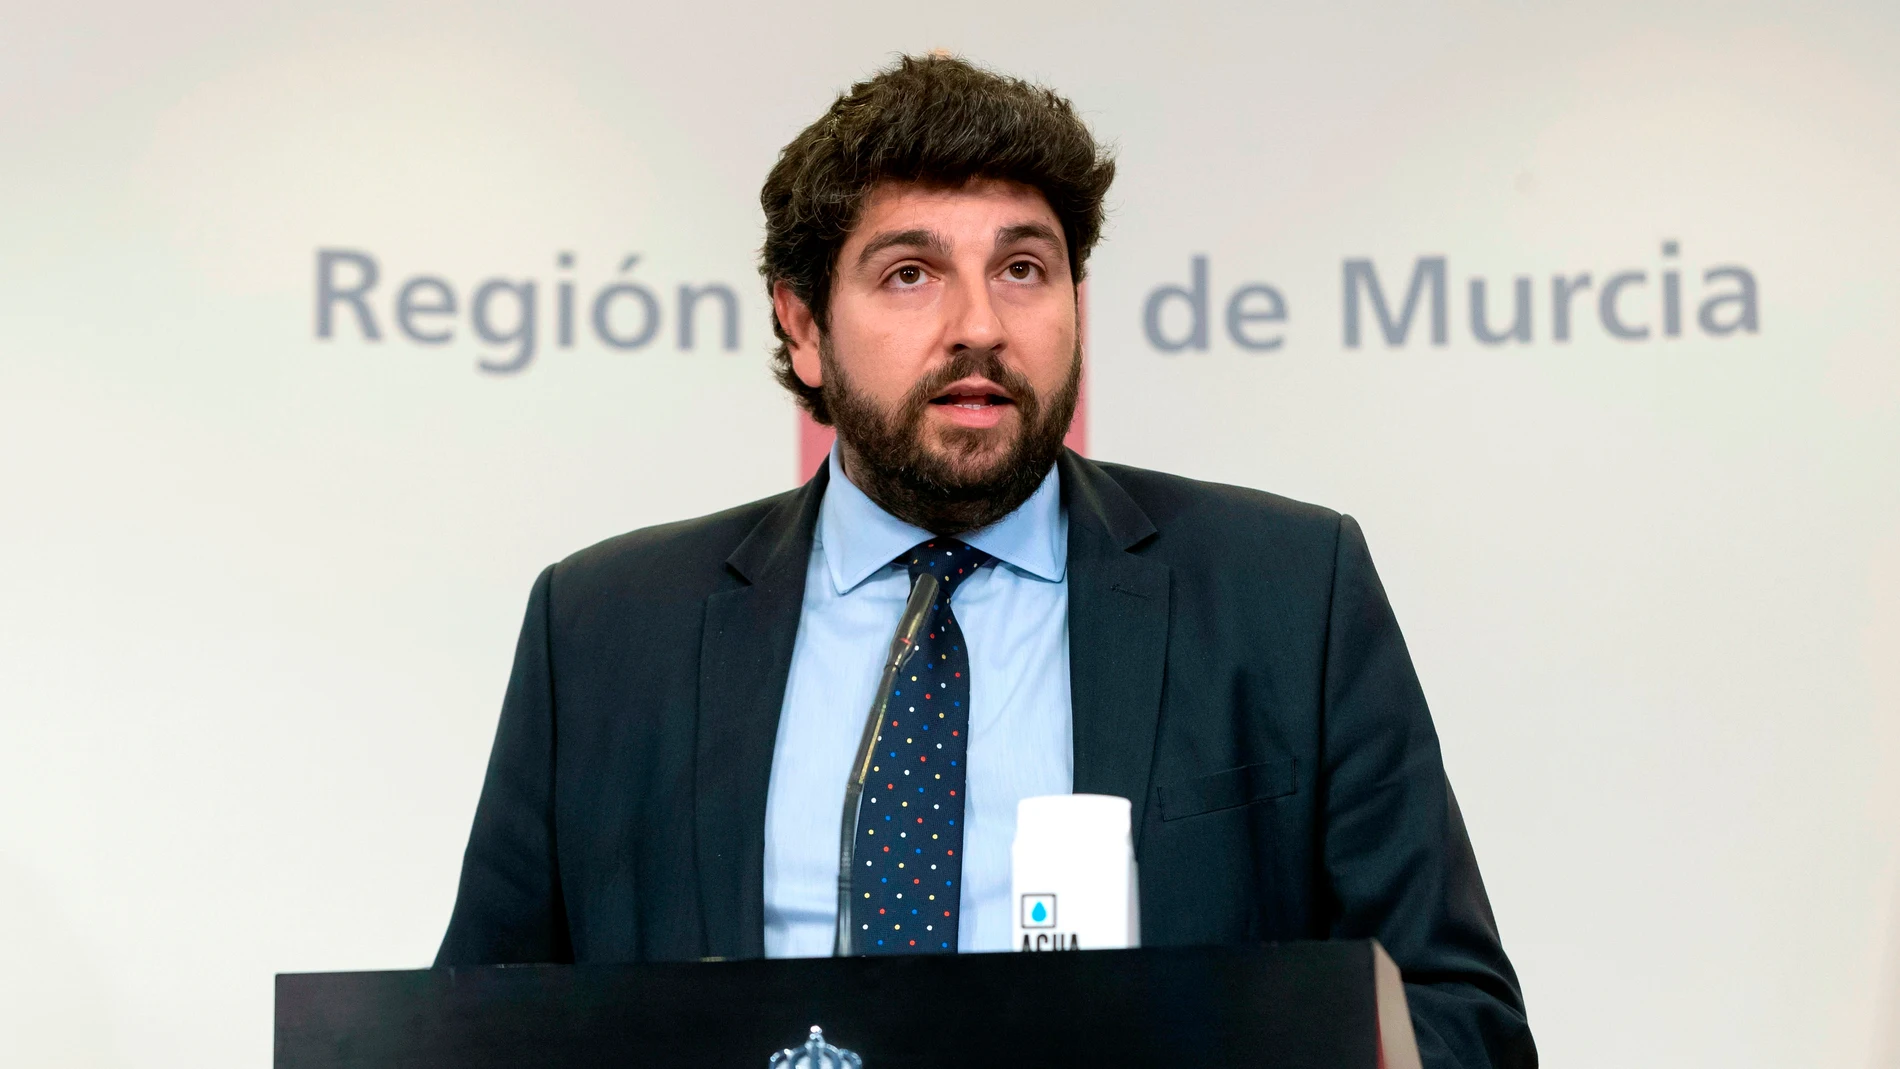 El presidente de la Región de Murcia, Fernando López Miras